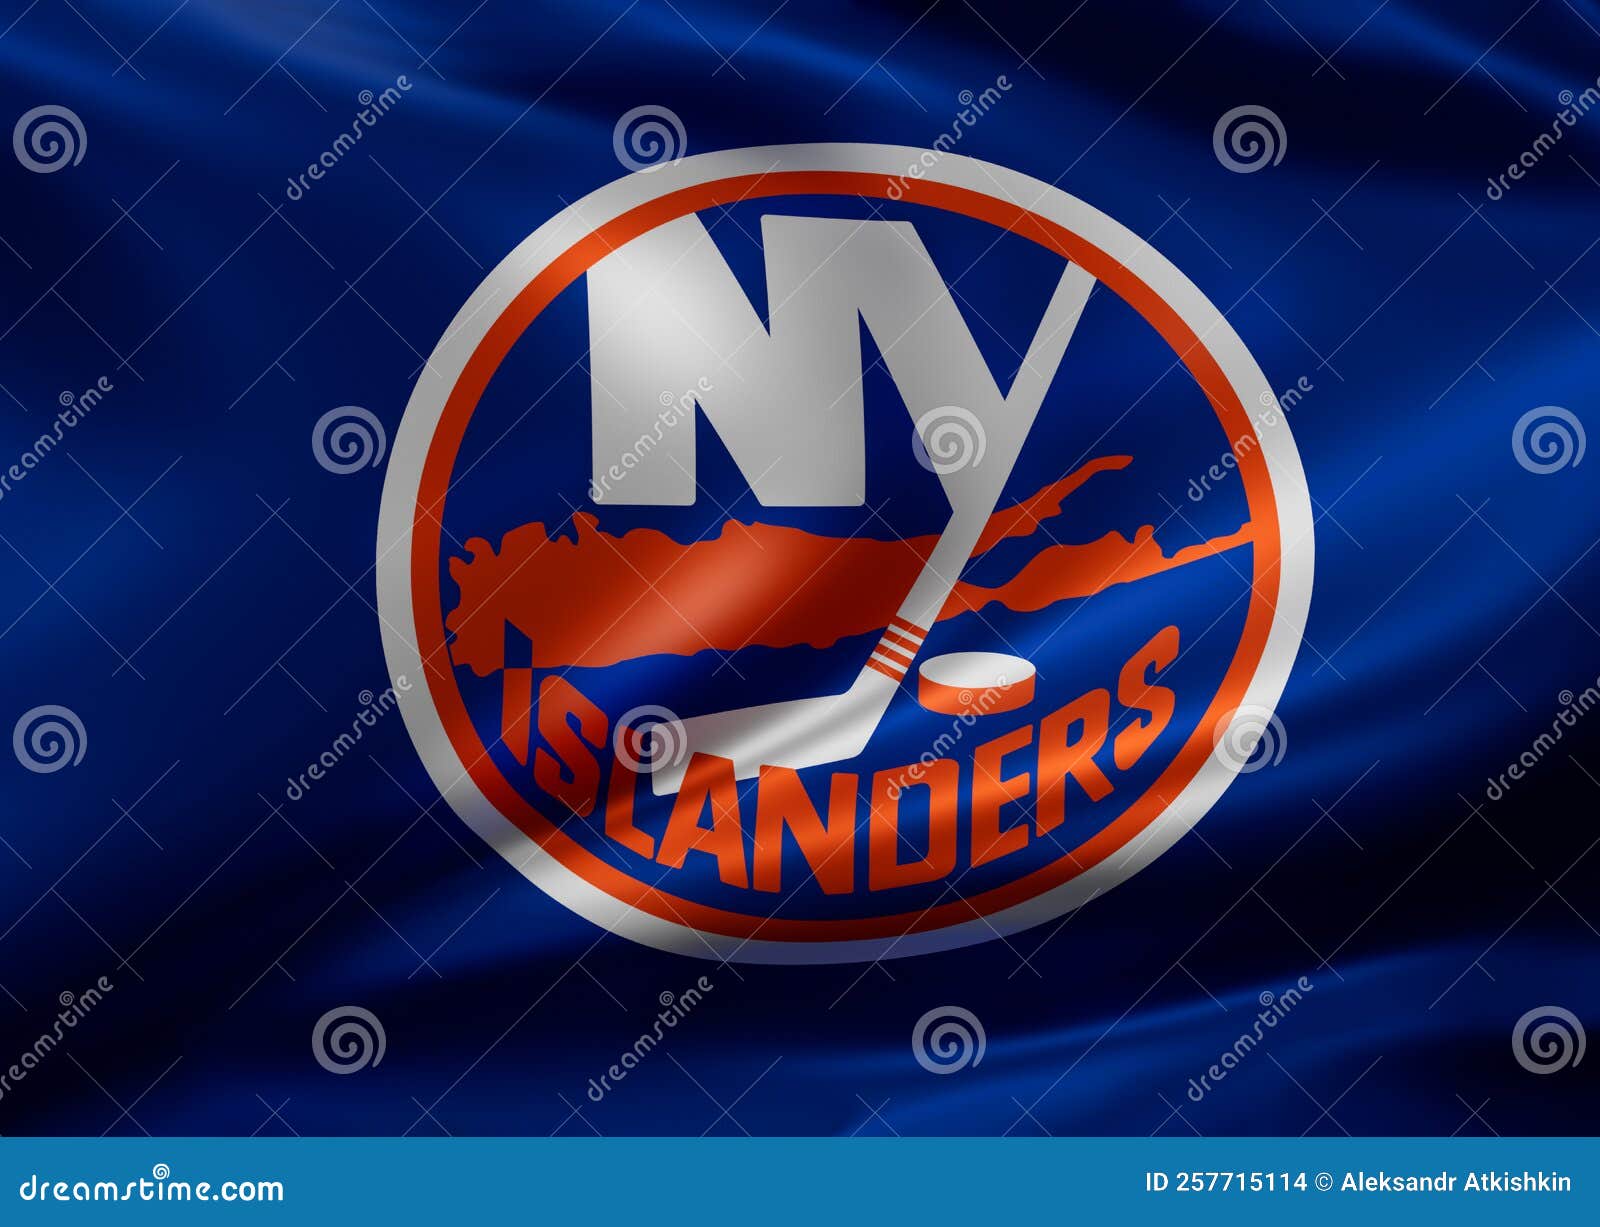 New York Islanders Wallpapers - Top 20 Best New York Islanders Wallpapers [  HQ ]